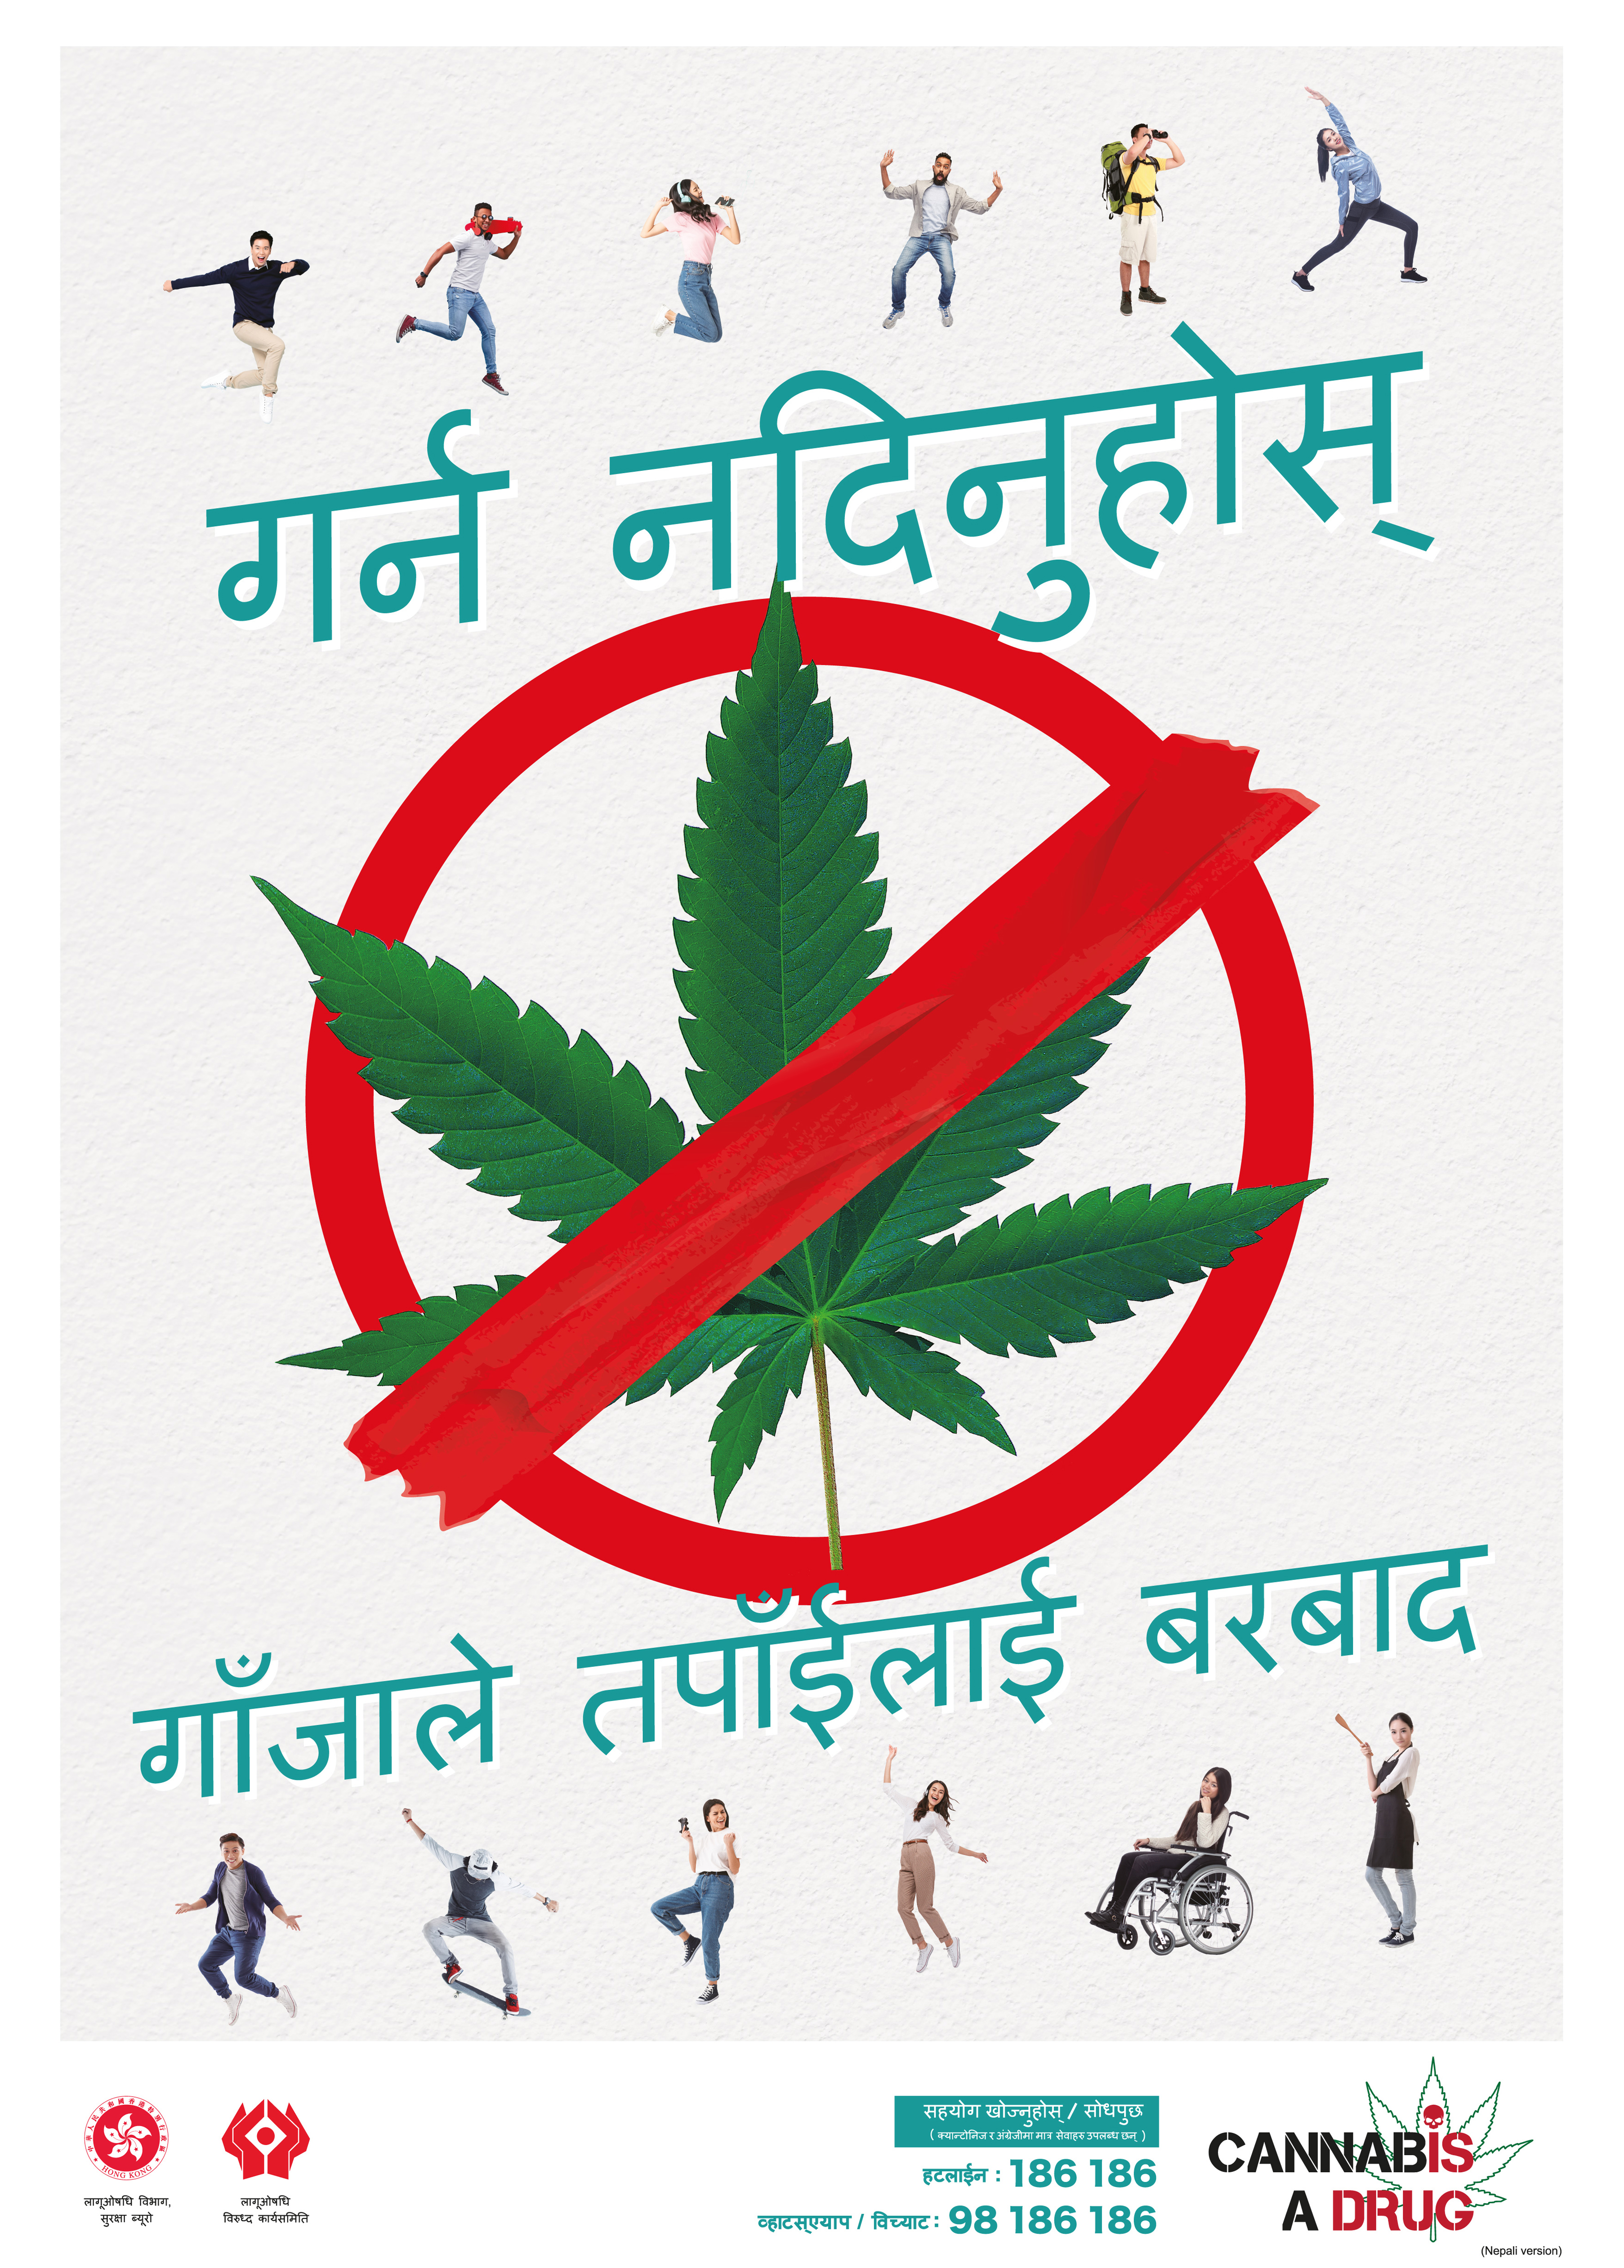 禁毒海报「自在生活 远离大麻」－ 尼泊尔文版本